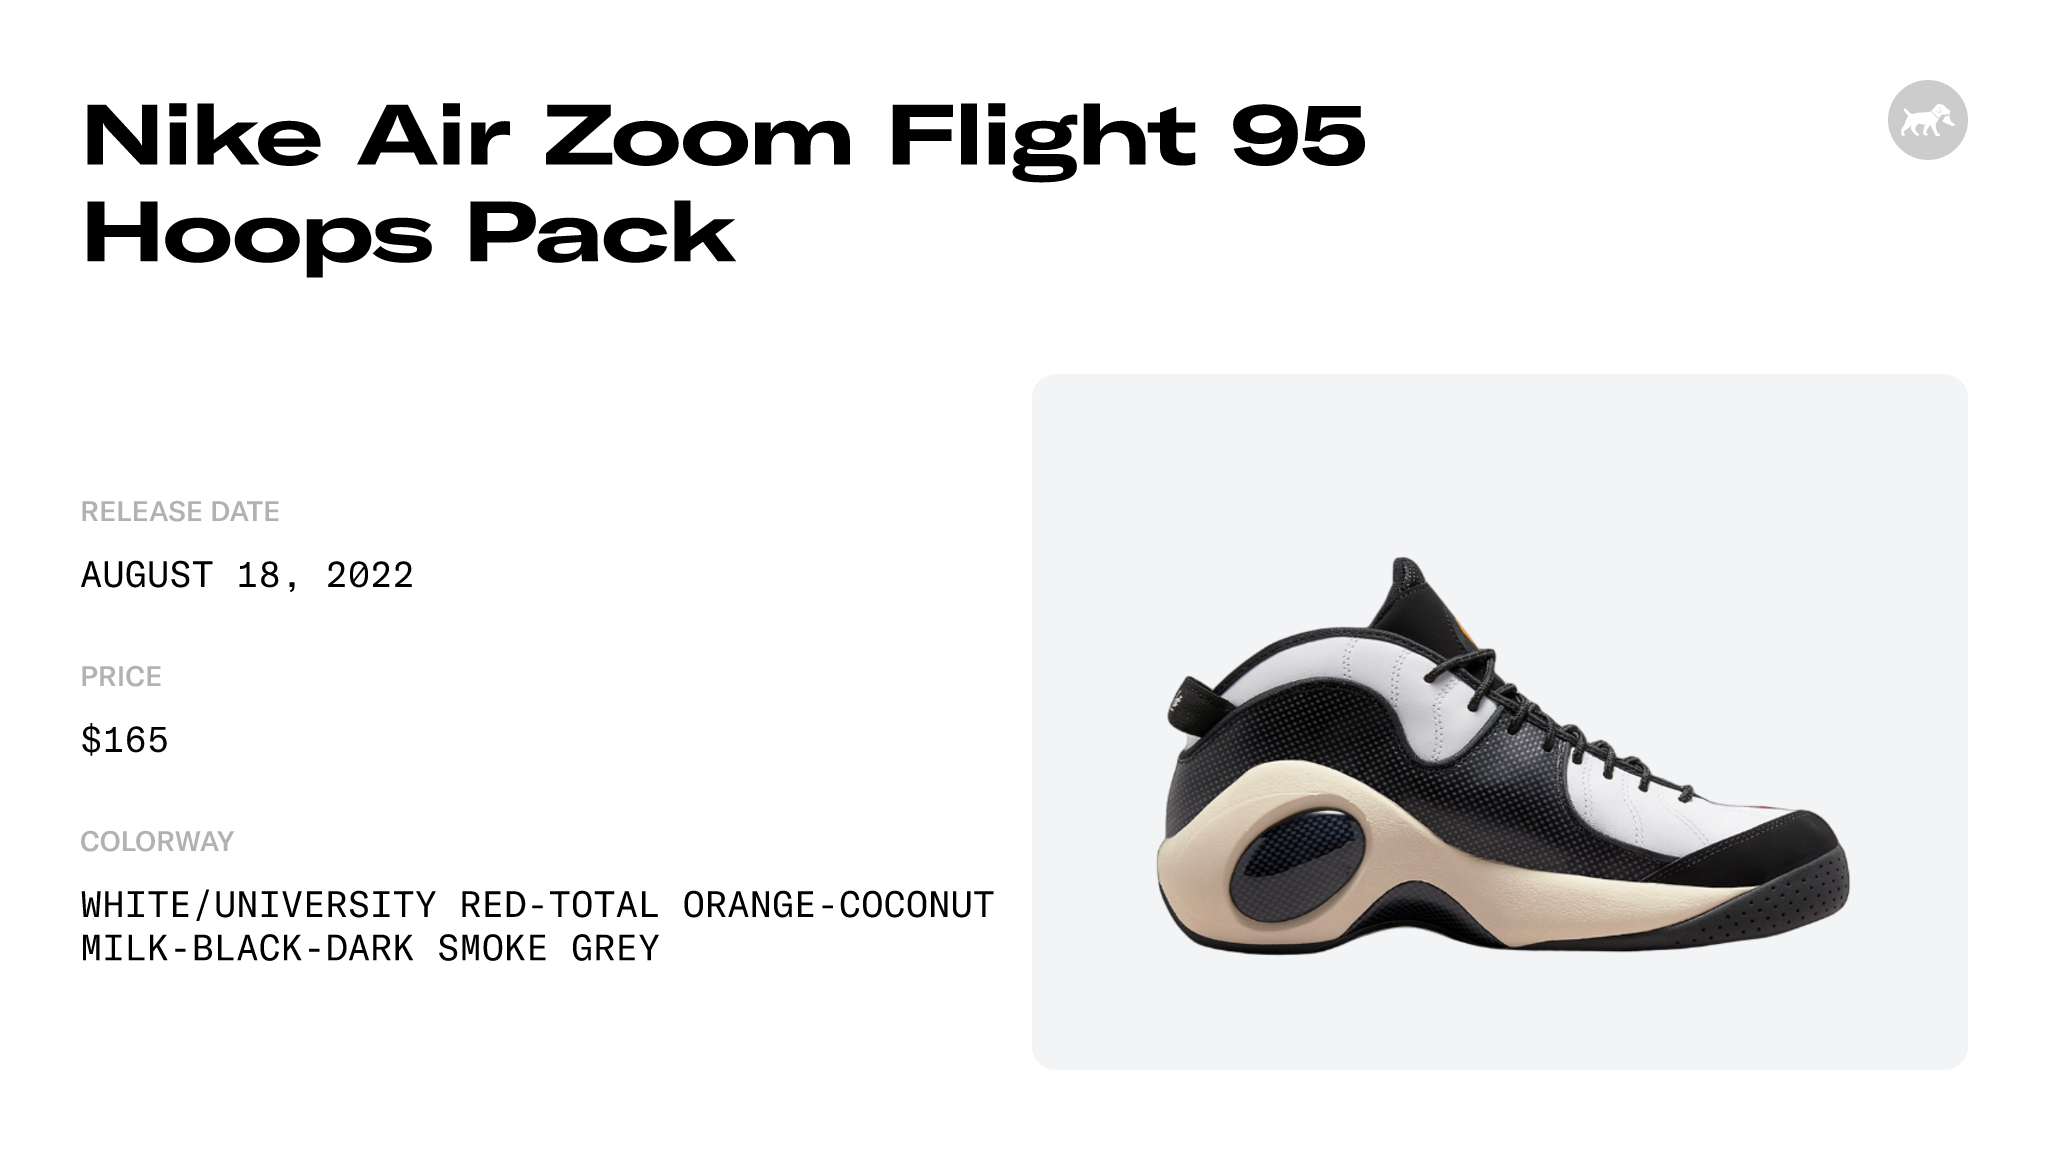 Nike Air Zoom Flight 95 Hoops Pack - DX3955-100 Raffles and Release Date